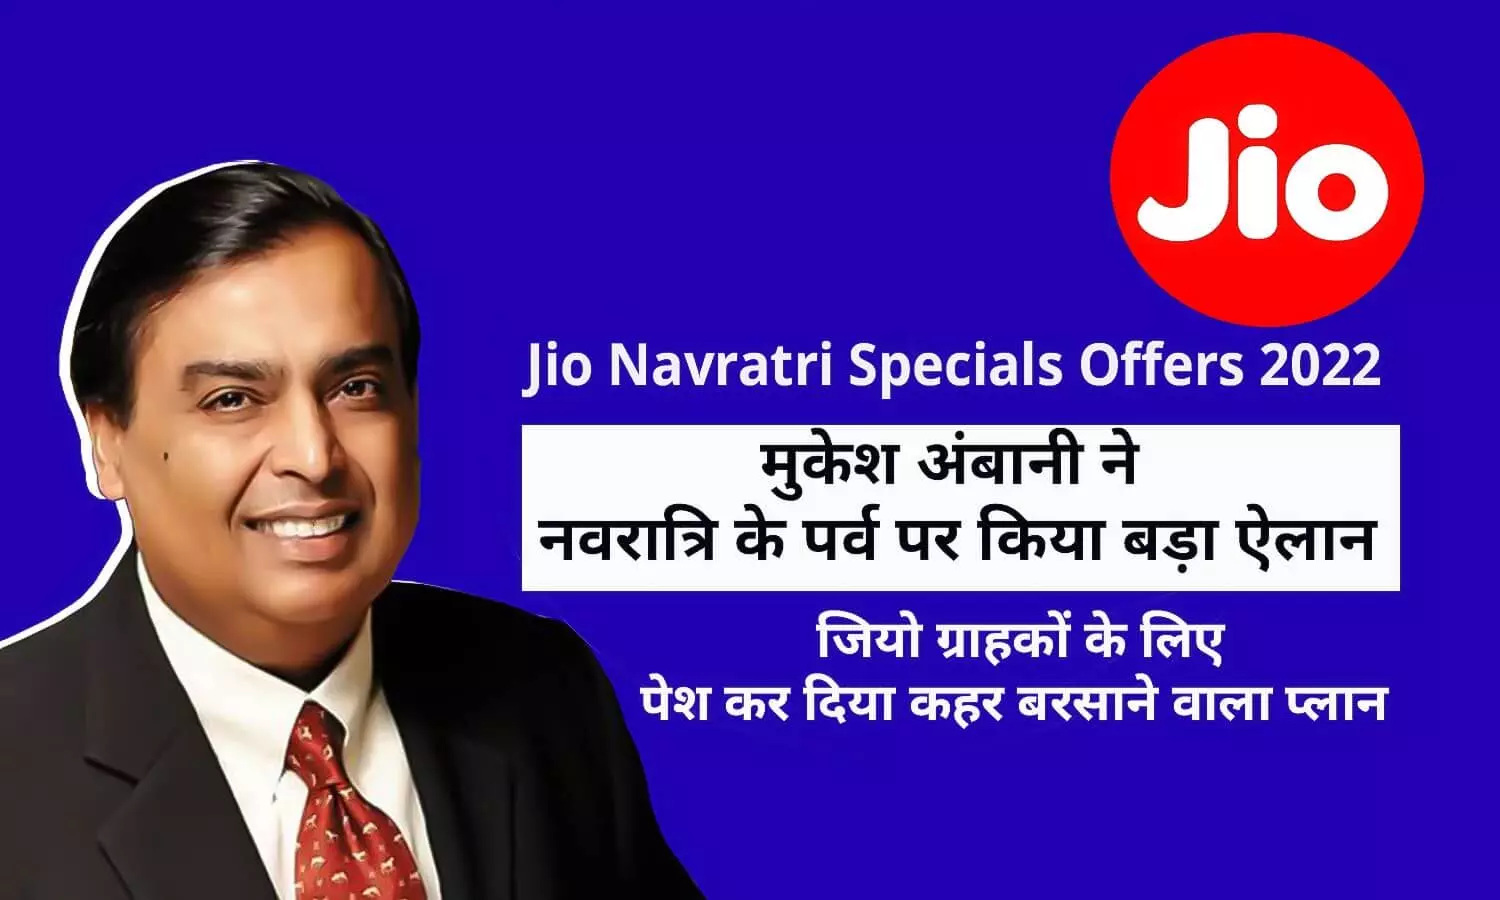 Jio Navratri Specials Offers 2022: मुकेश अंबानी ने नवरात्रि के पर्व पर किया बड़ा ऐलान, जियो ग्राहकों के लिए पेश कर दिया कहर बरसाने वाला प्लान